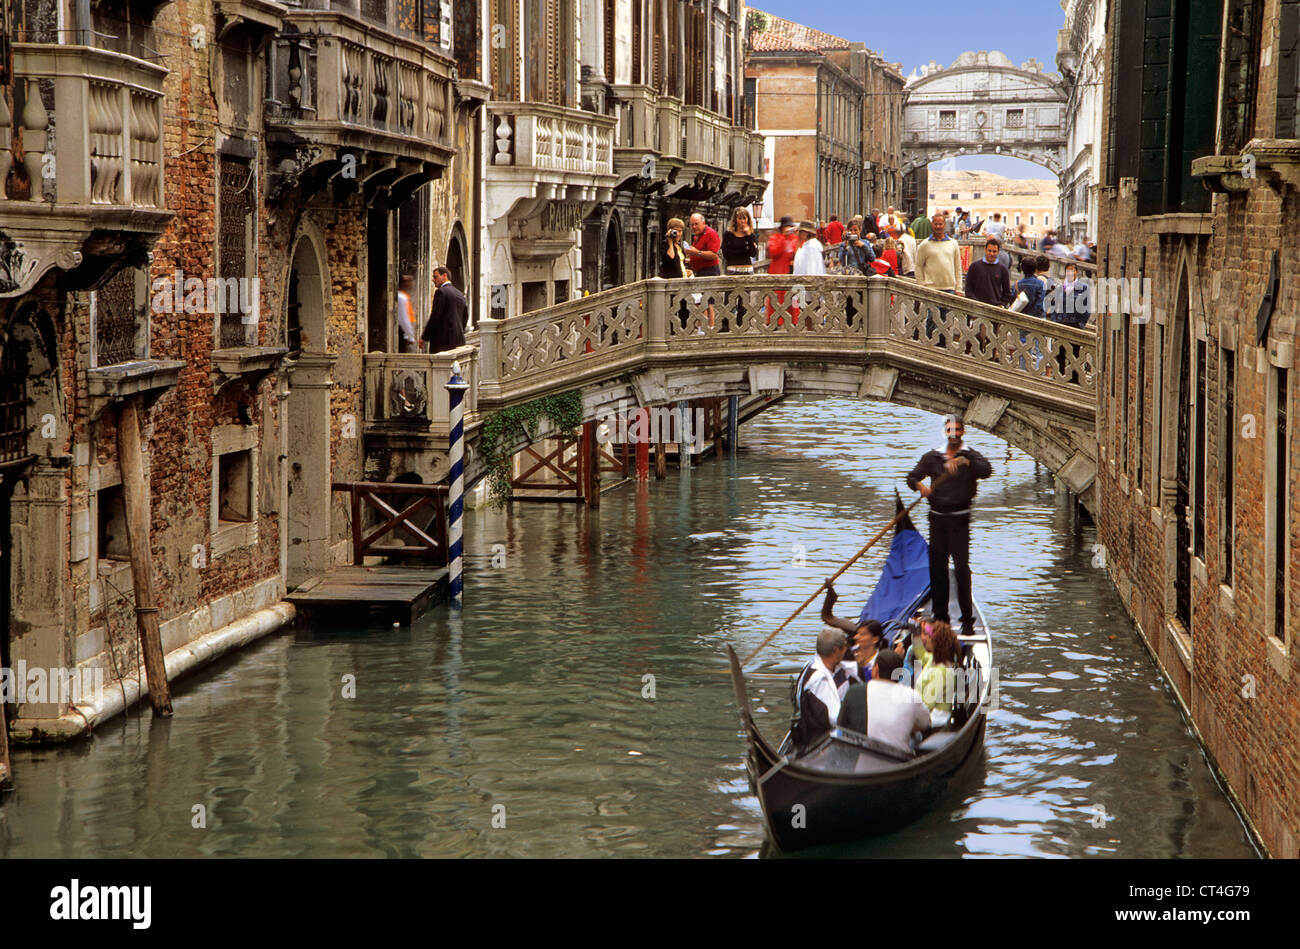 Gondola on Rio di Palazzo, Venice, Italy Stock Photo